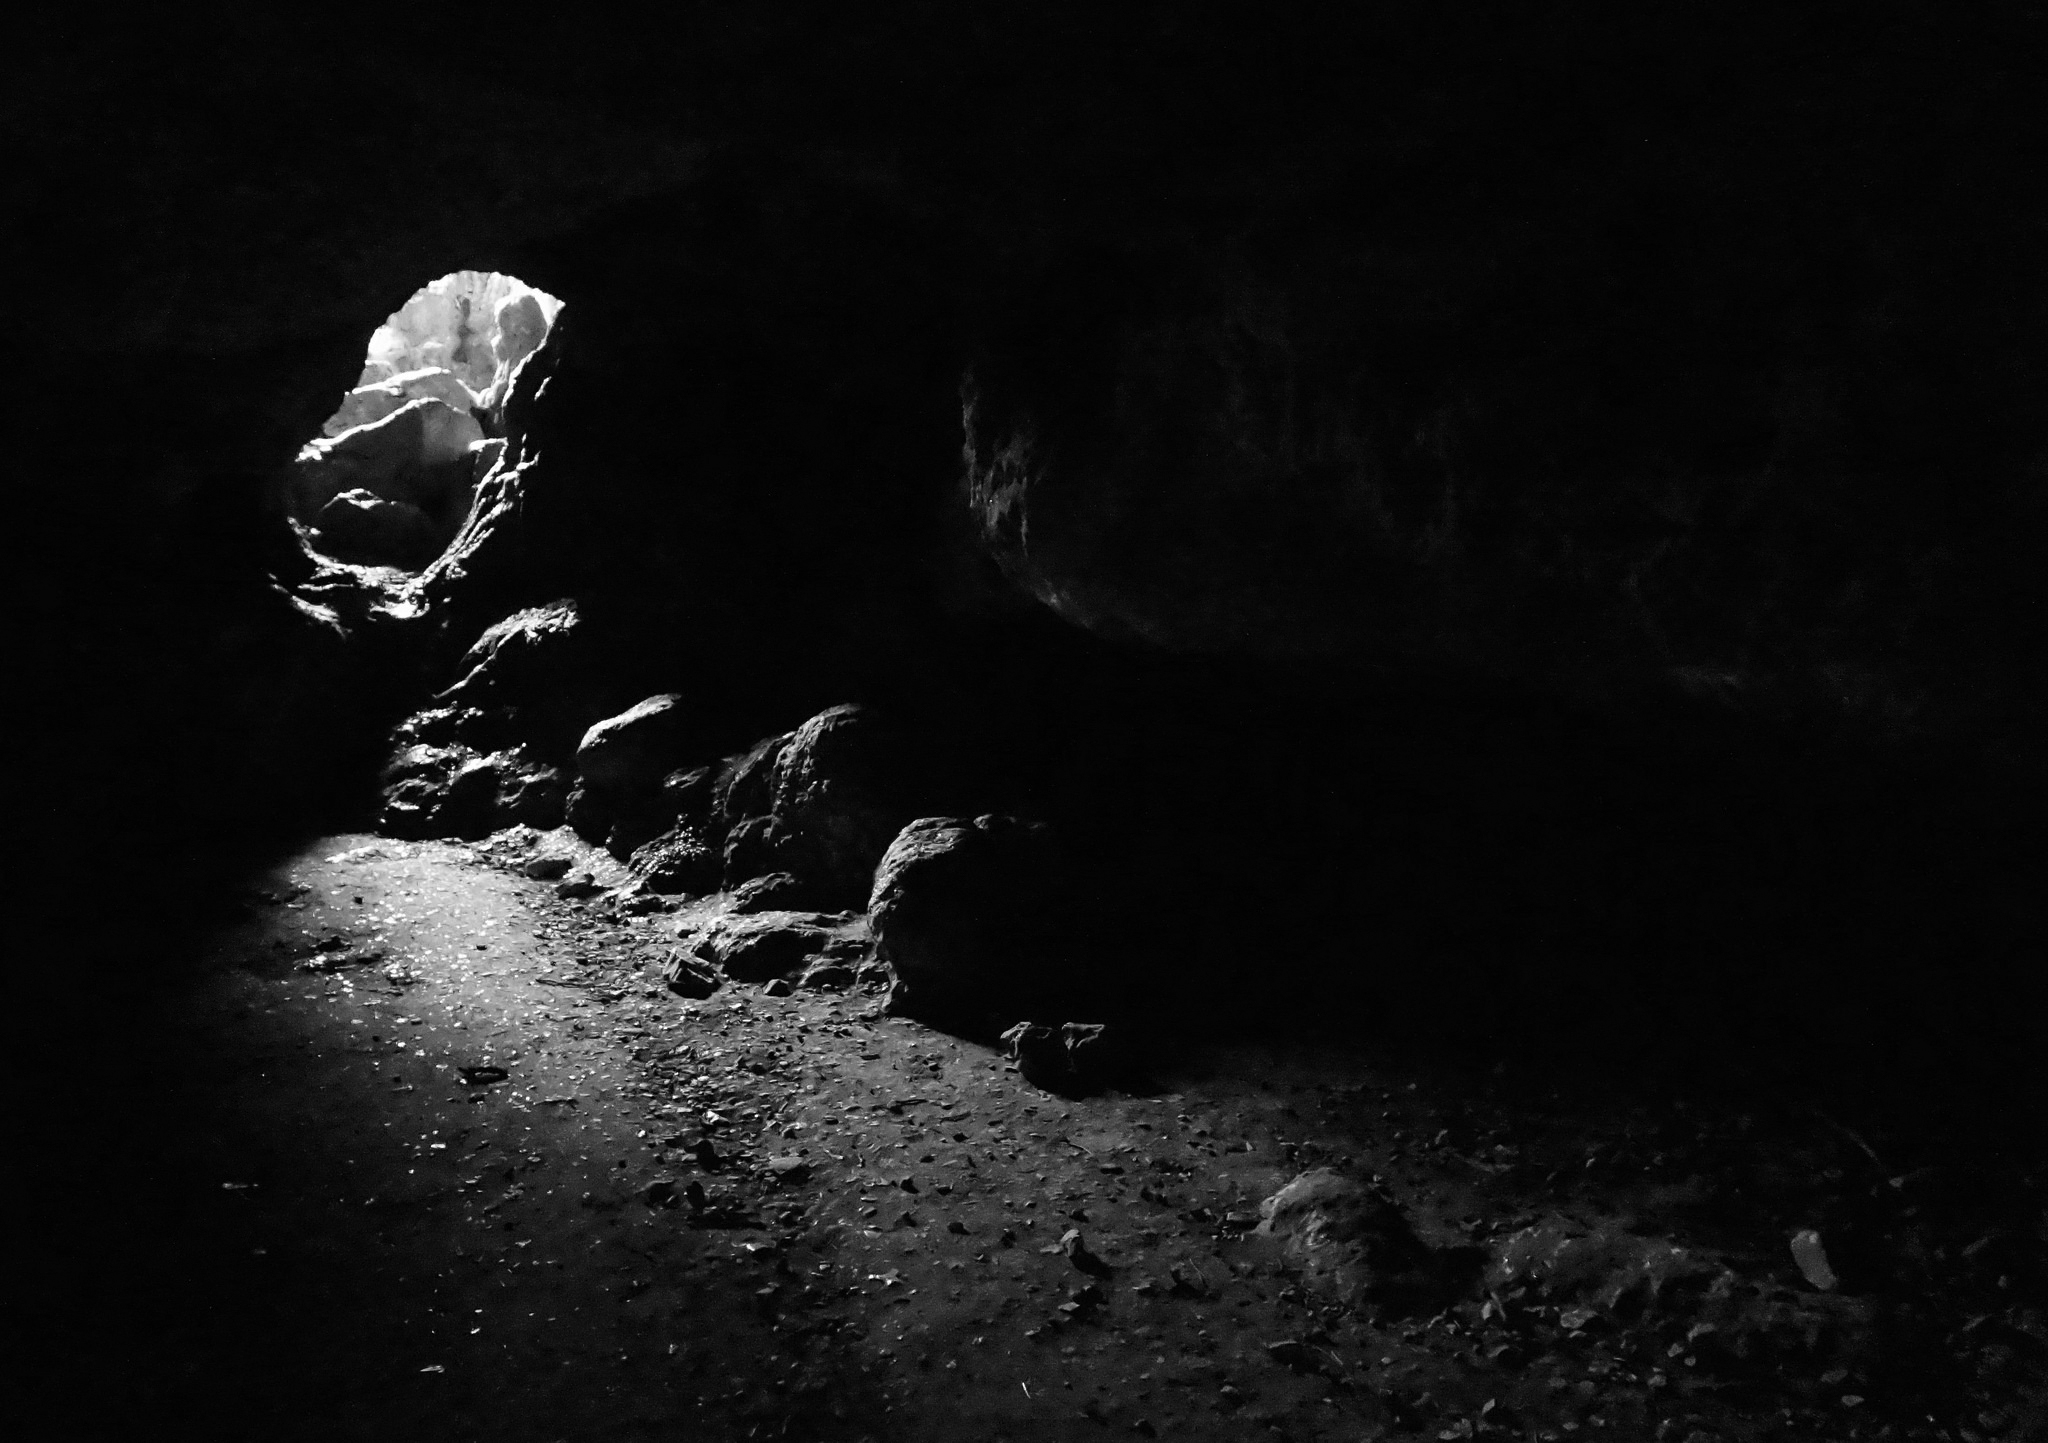 <s>Plato’s Cave</s> Lilith’s Cave